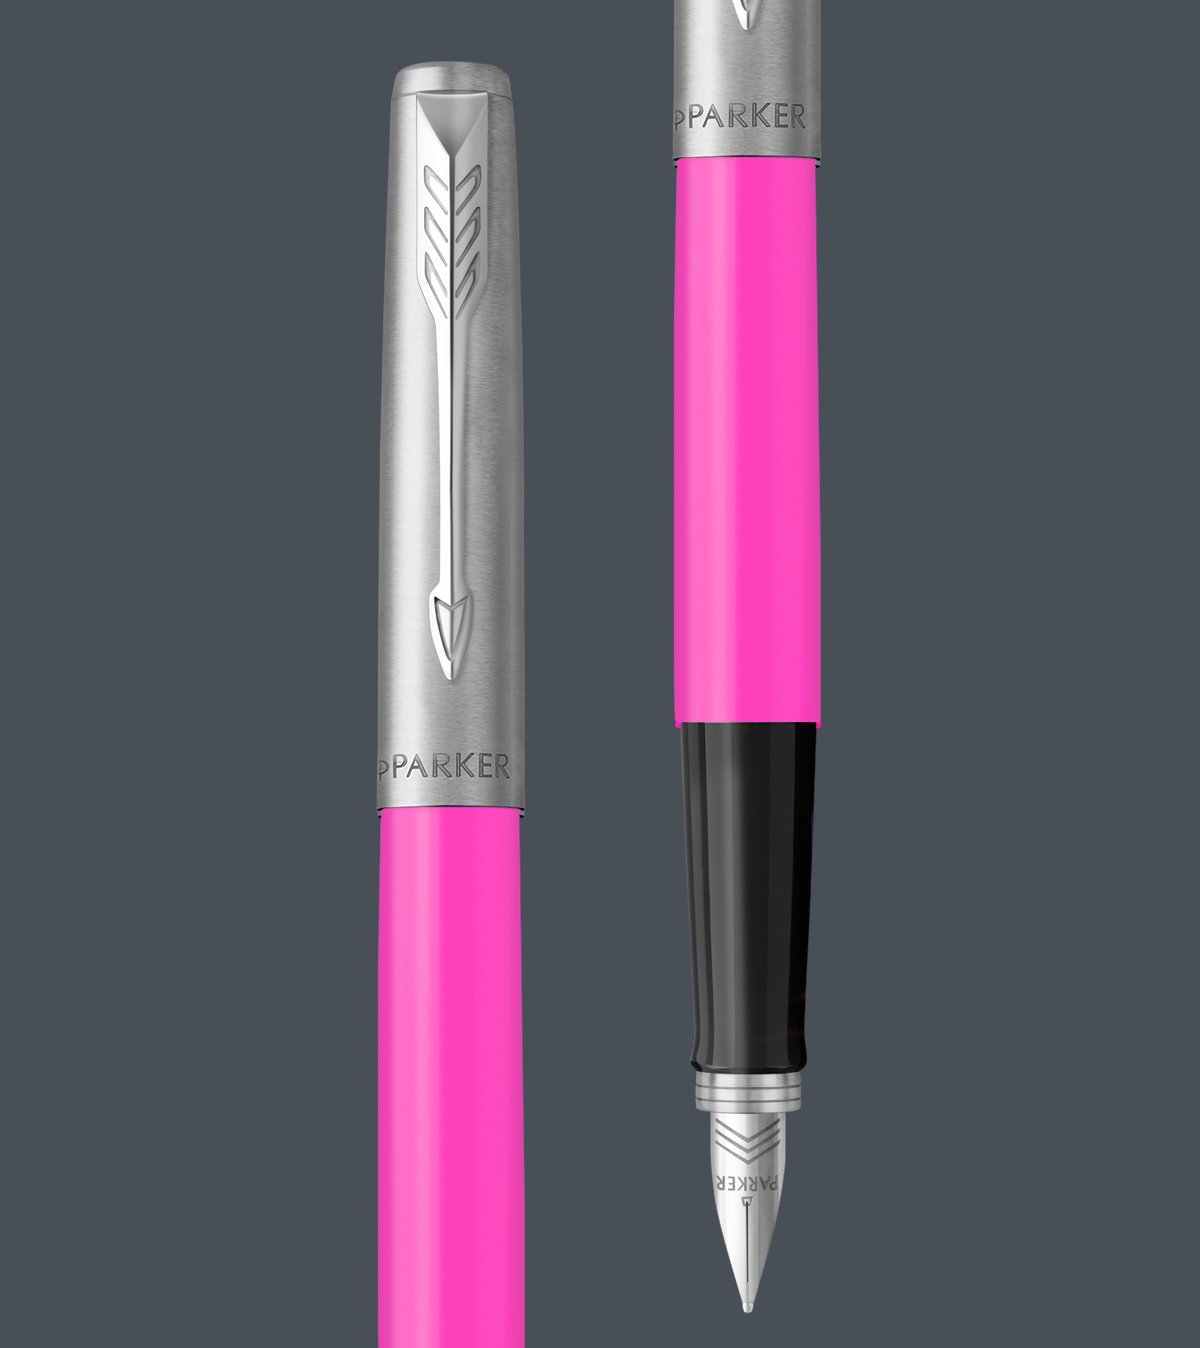 Parker Jotter Ballpoint Pen Blue Ink Silver/Pink 